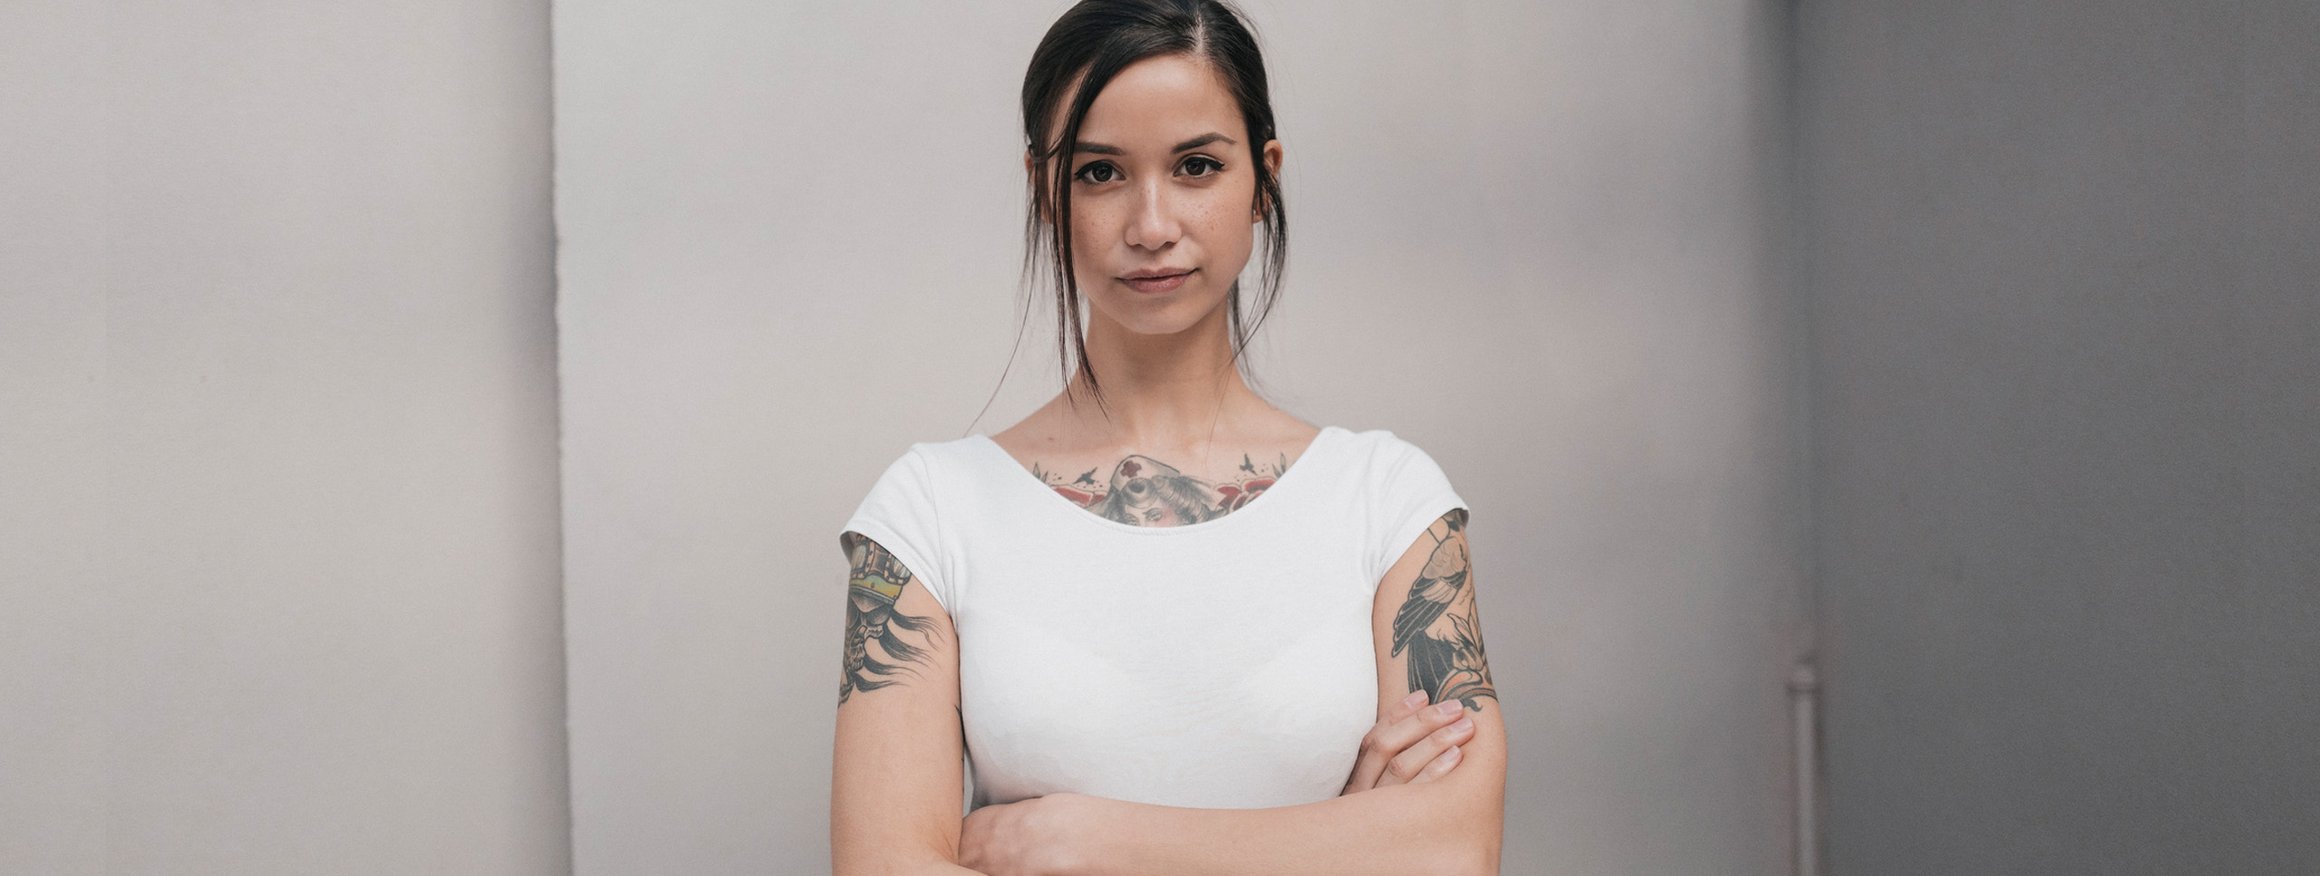 Eine junge Frau mit weißem Shirt und Tattoos schaut ernst und hat die Arme vor ihren Körper verschränkt